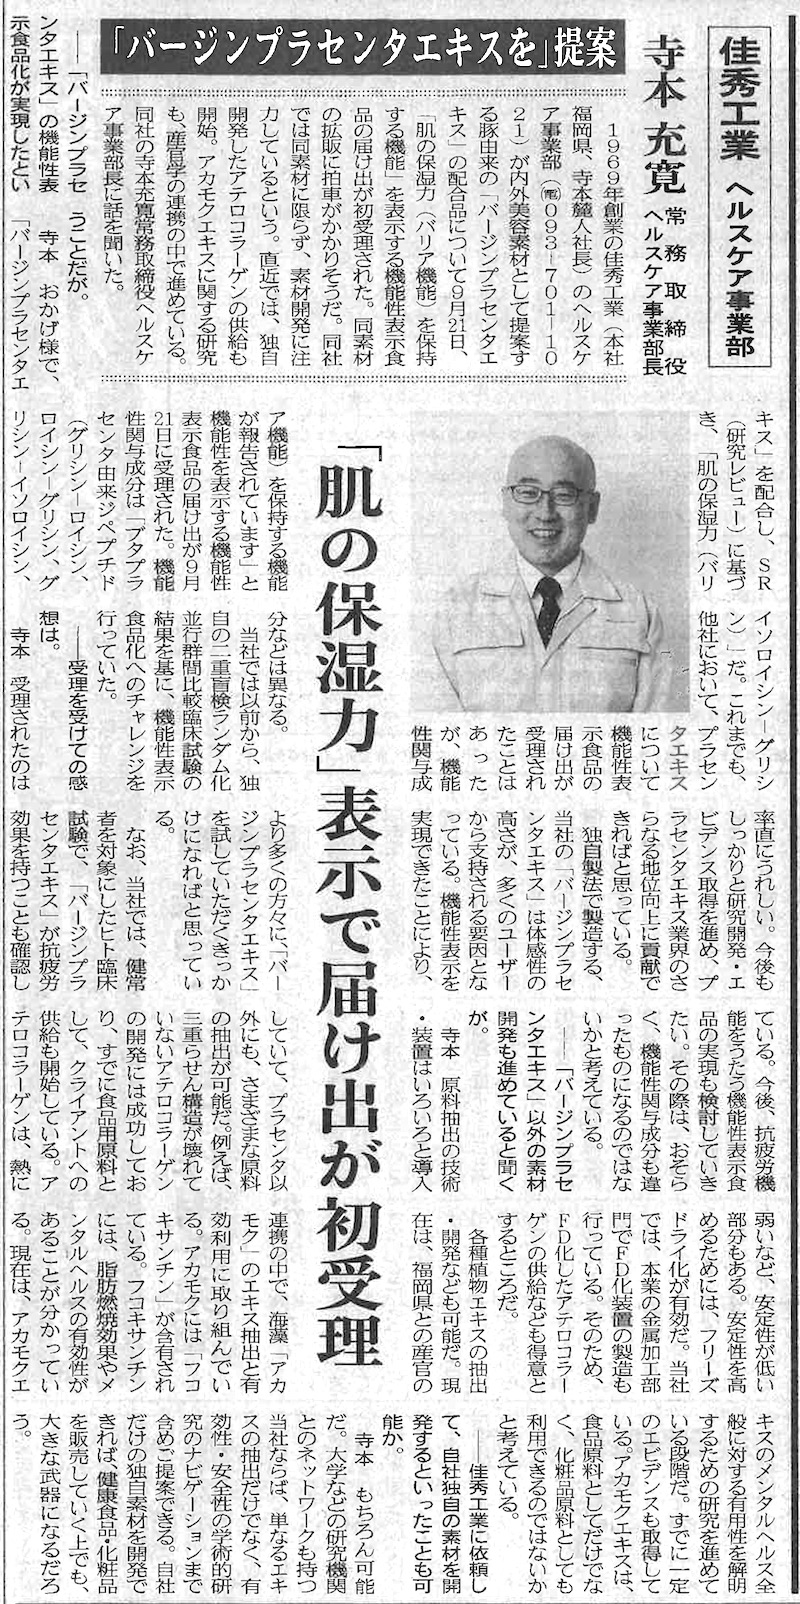 機能性表示食品の届け出の初受理について掲載された日本流通産業新聞記事